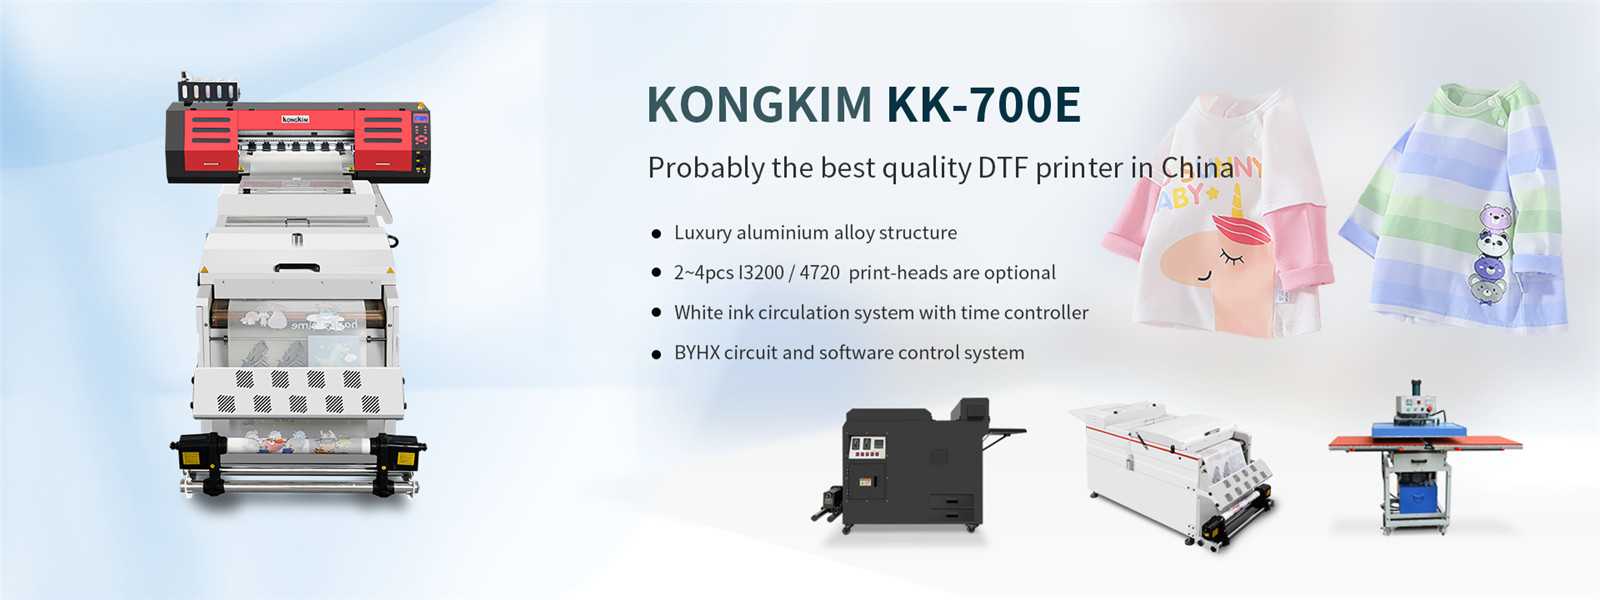 Superior quality 60cm i3200 4720 xp600 printheads dtf pet film printer-01